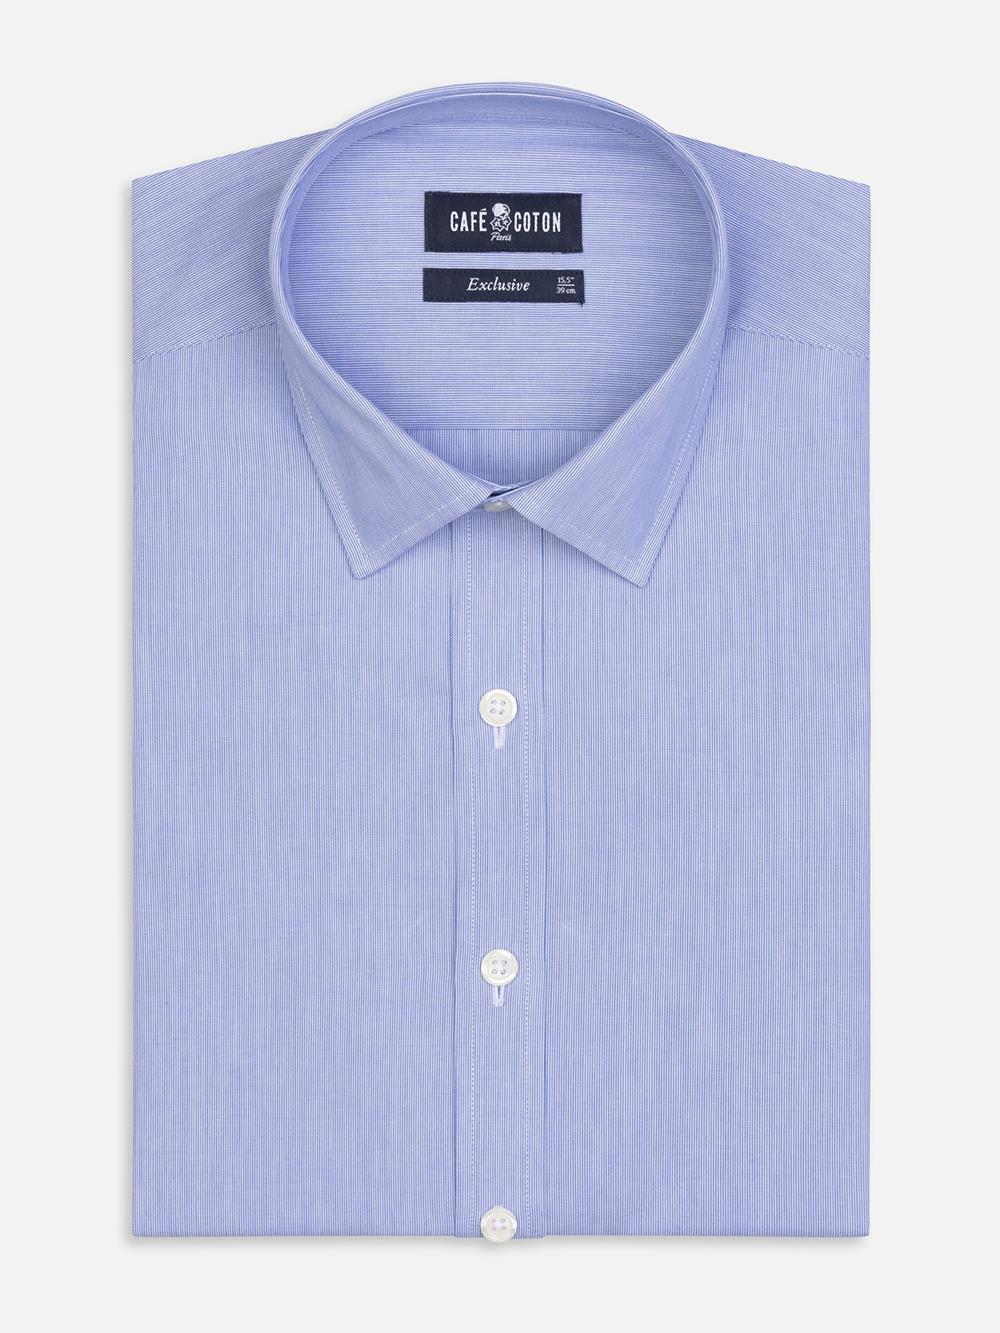 Tailliertes Hemd mit tausend Streifen blau - Kleiner Kragen